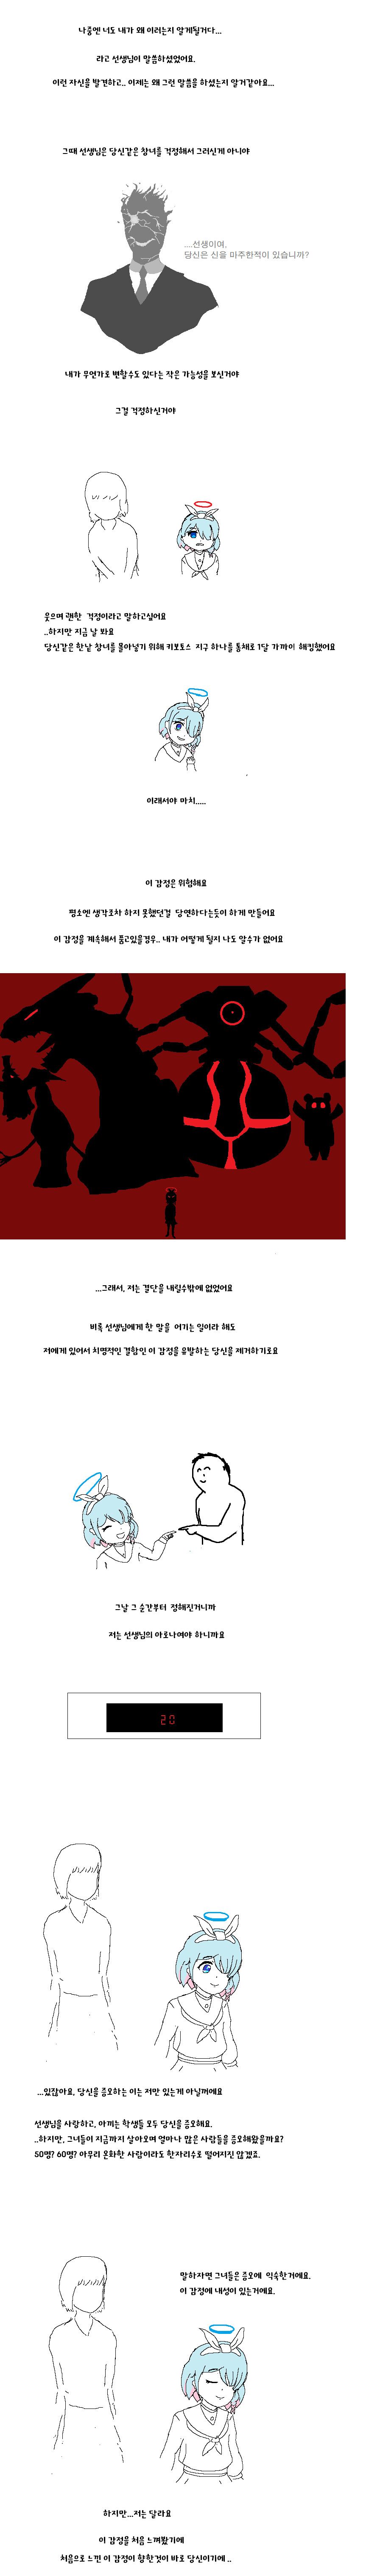 매운맛 주의) ntr남녀 참교육 당하는 만화 - 블루 아카이브 채널 005.png